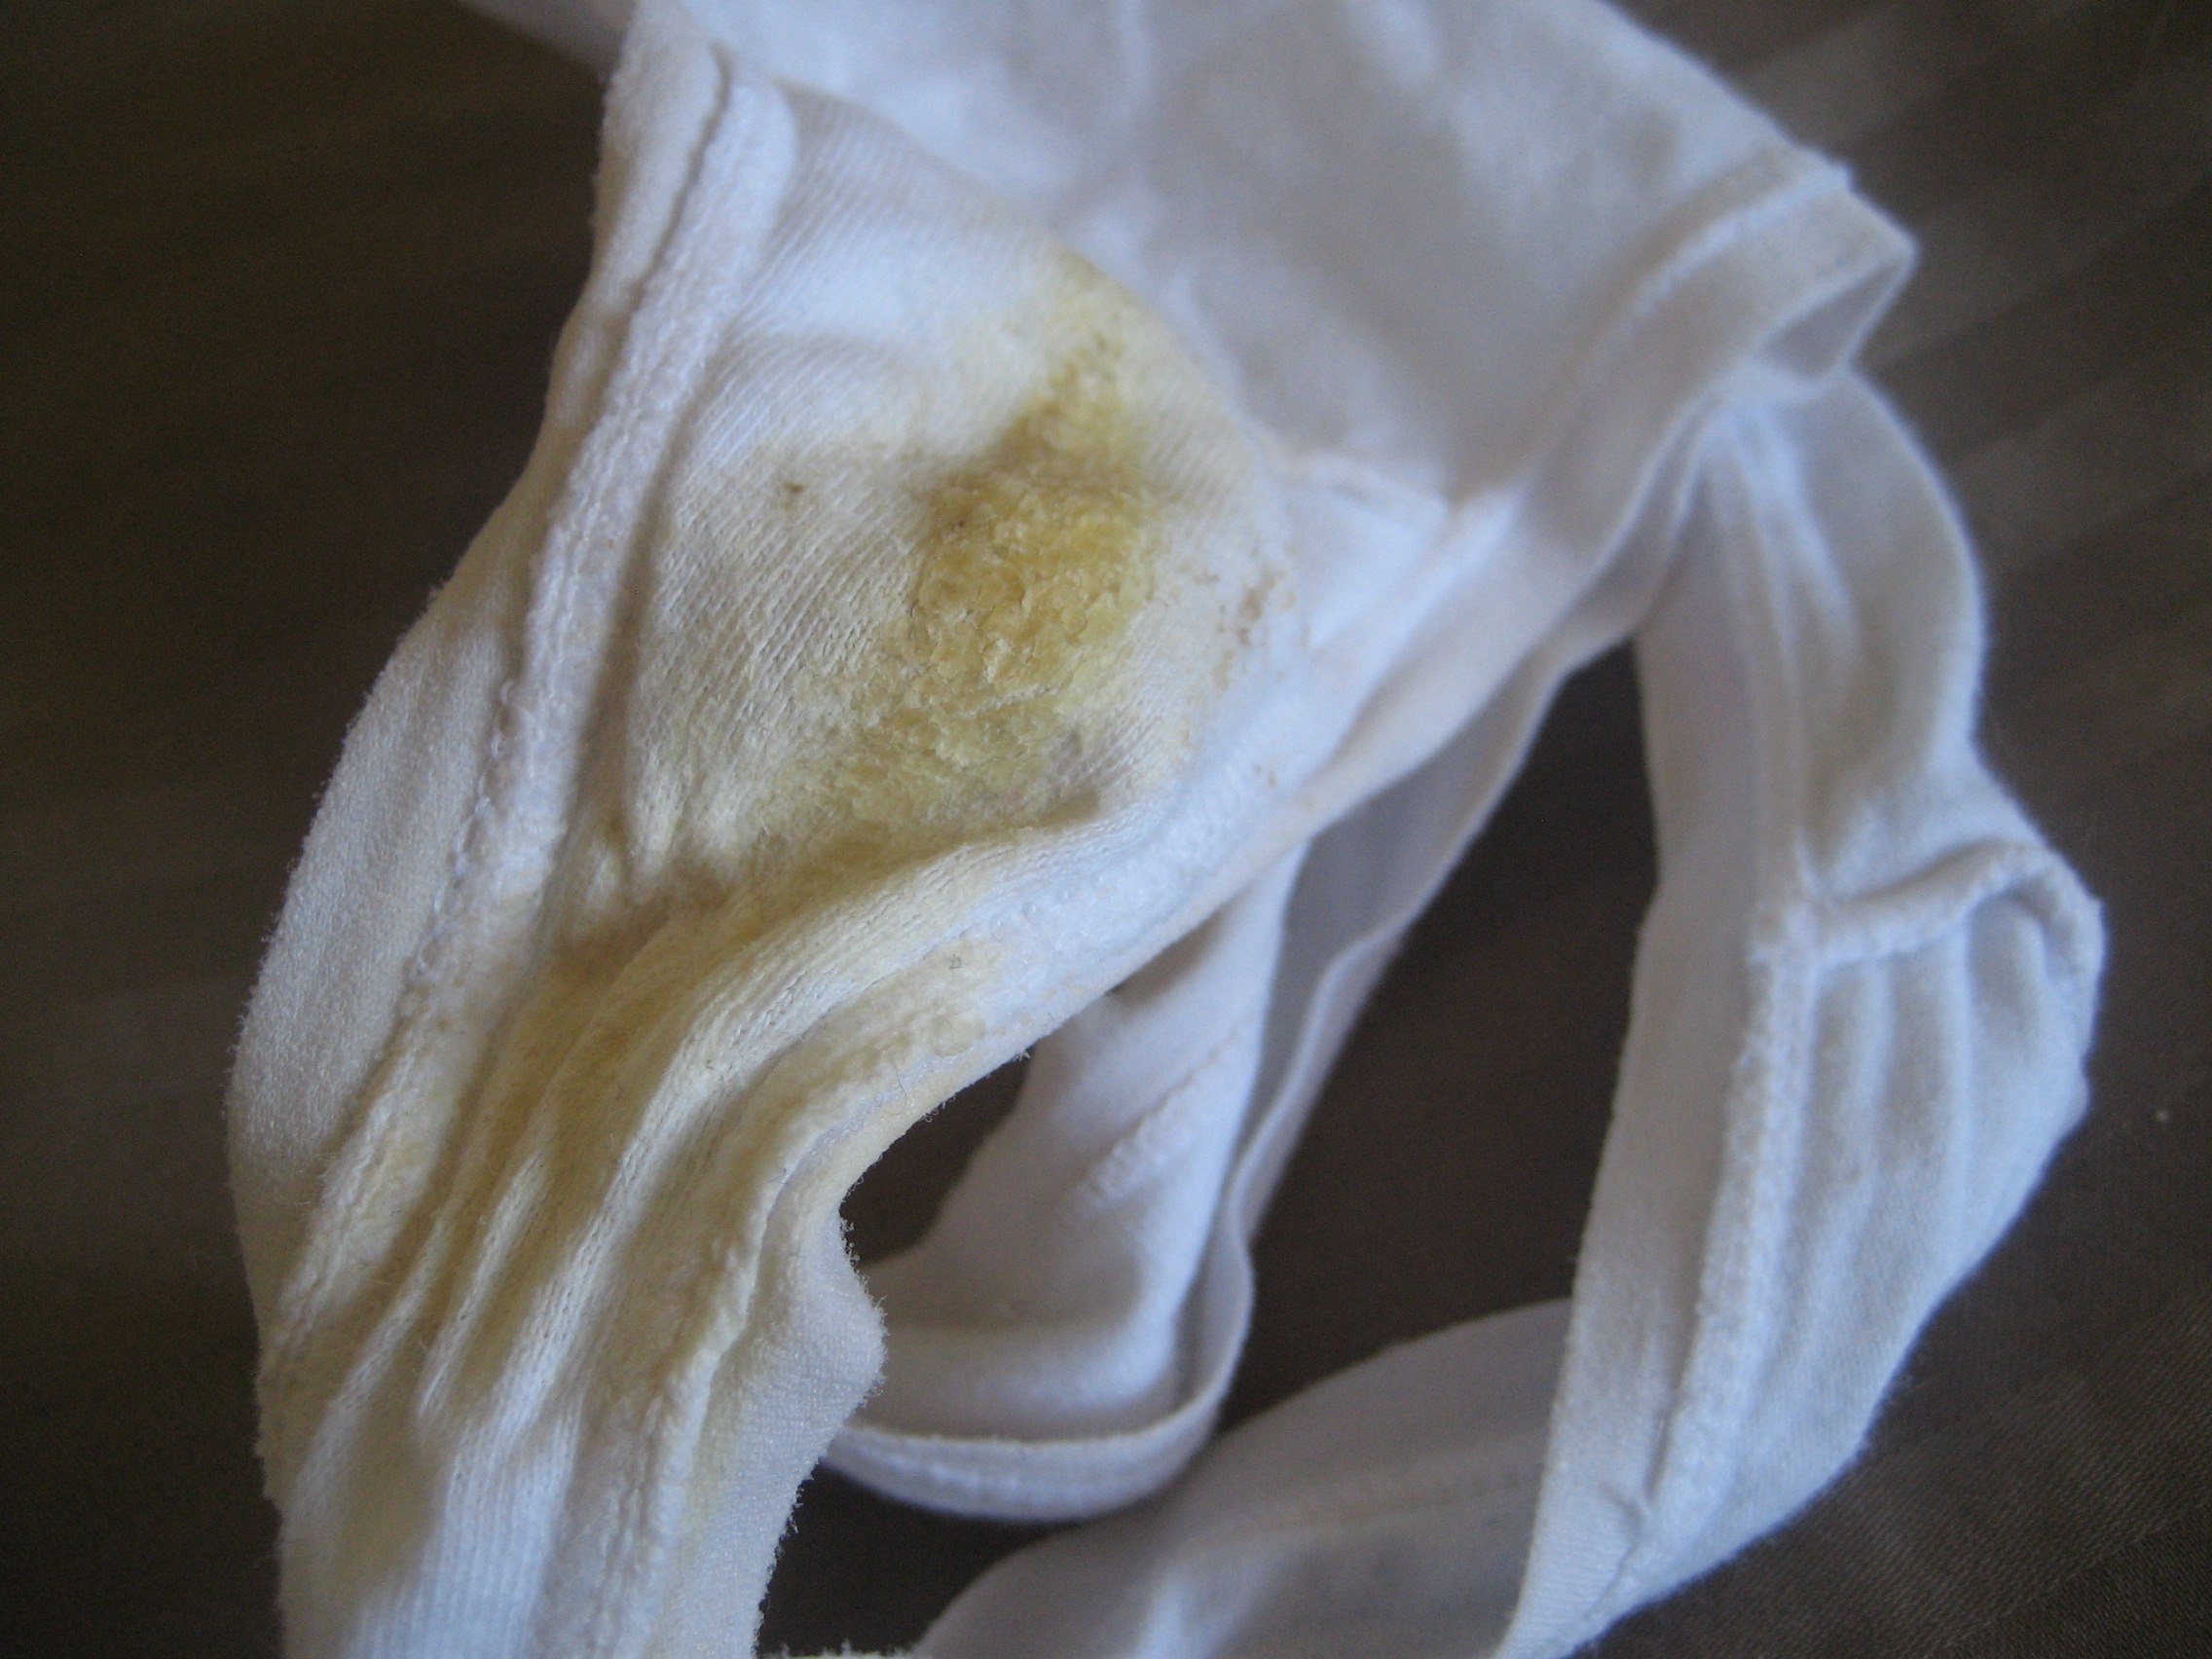 Used Soiled Panties 23